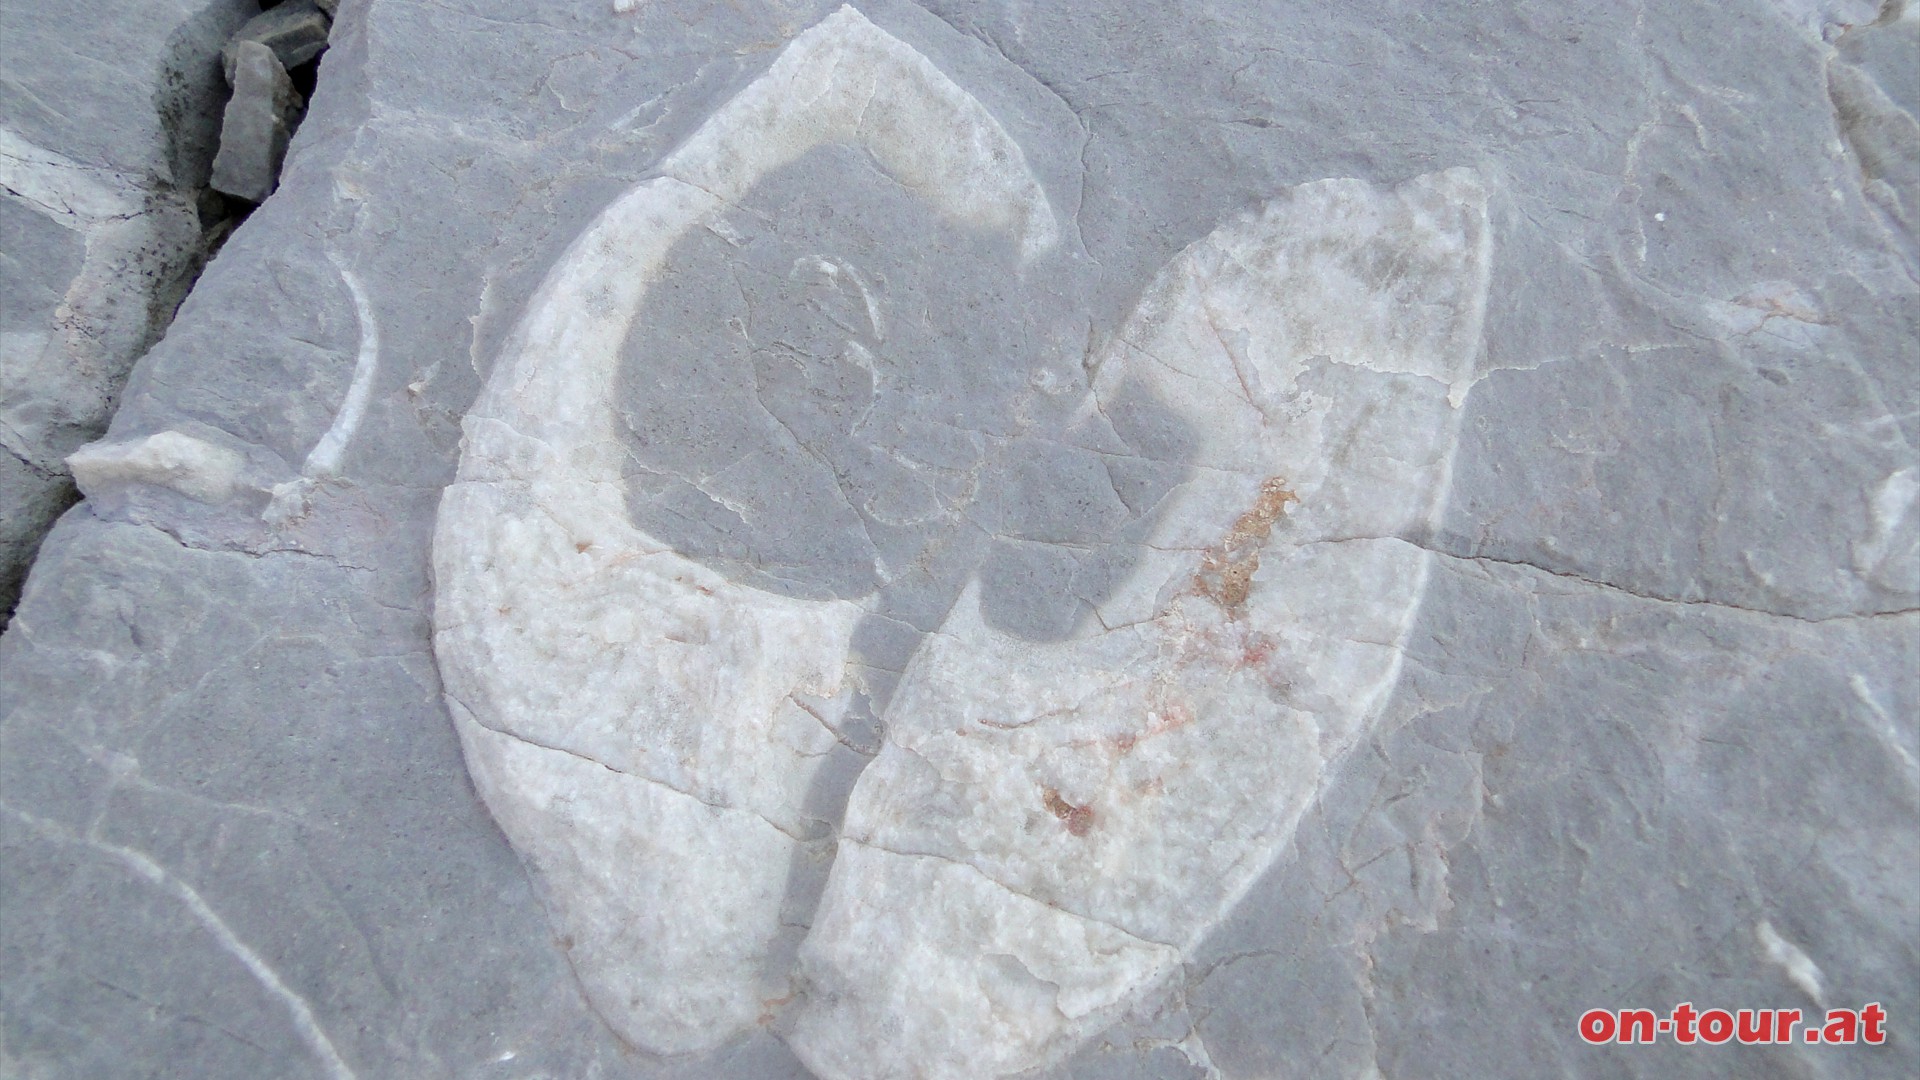 Nein, kein Kuhtritt, sondern Megalodonten - versteinerte Muscheln aus der Trias-Zeit.